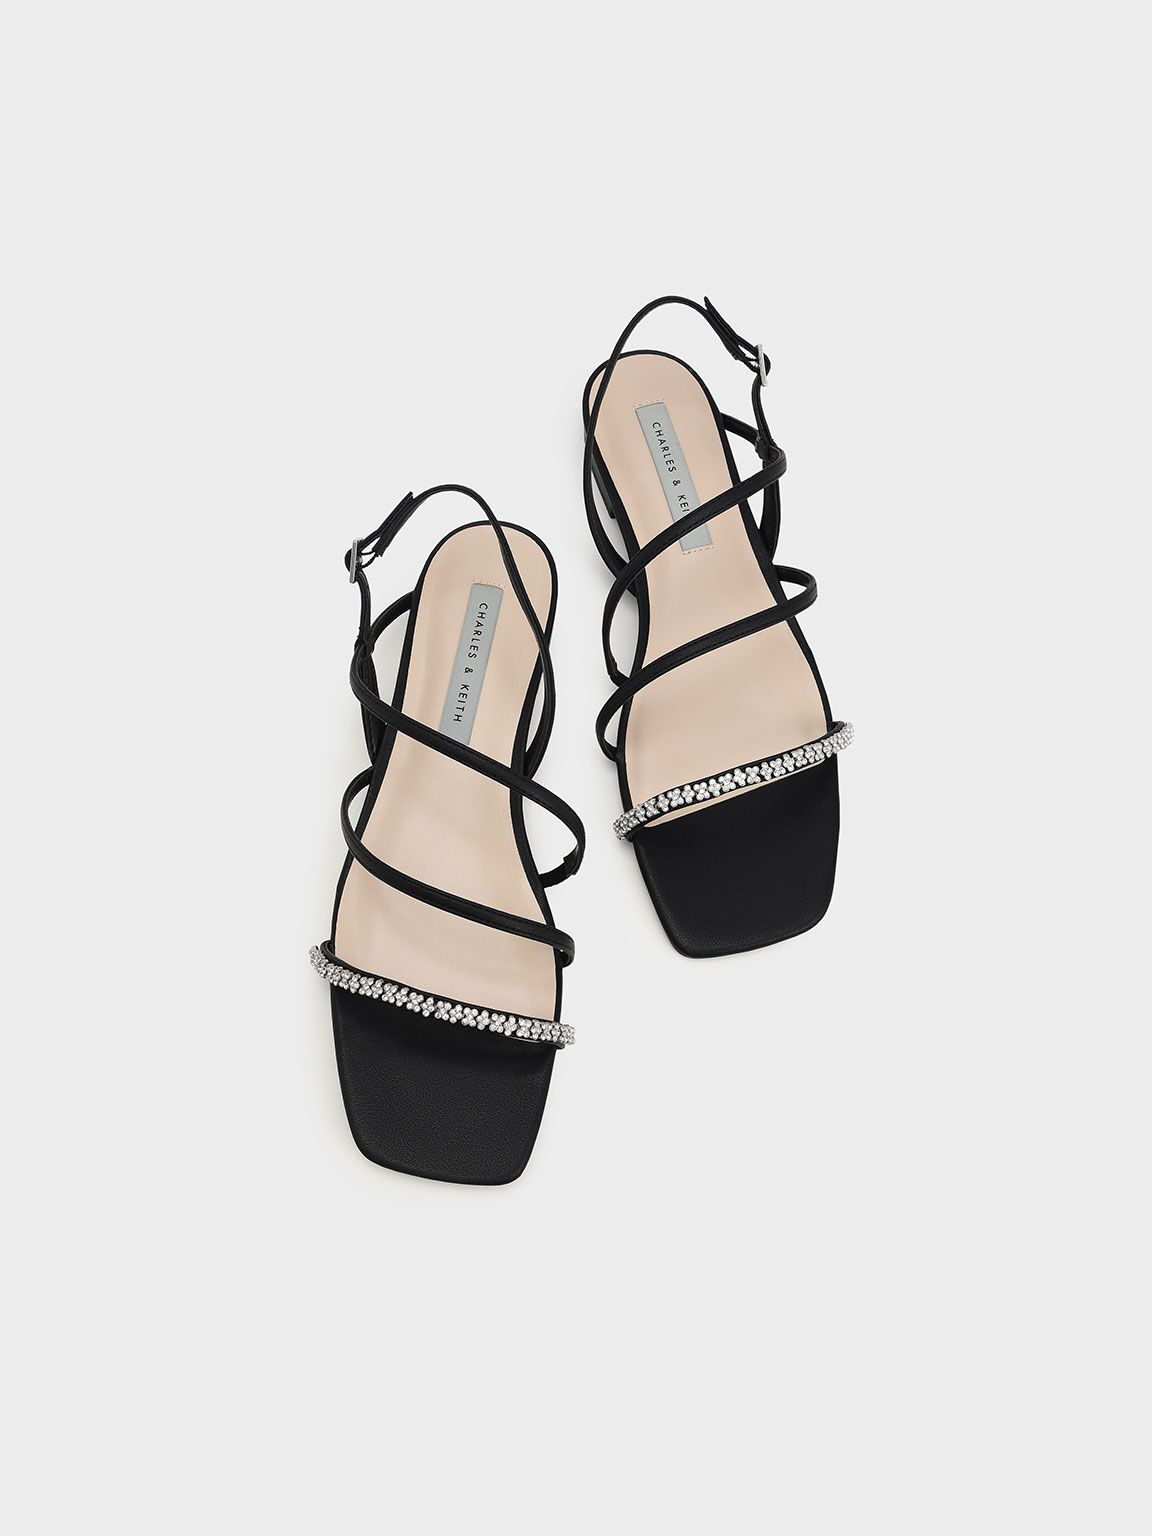 Gem-Encrusted Strappy Slingback Sandals, Black, hi-res